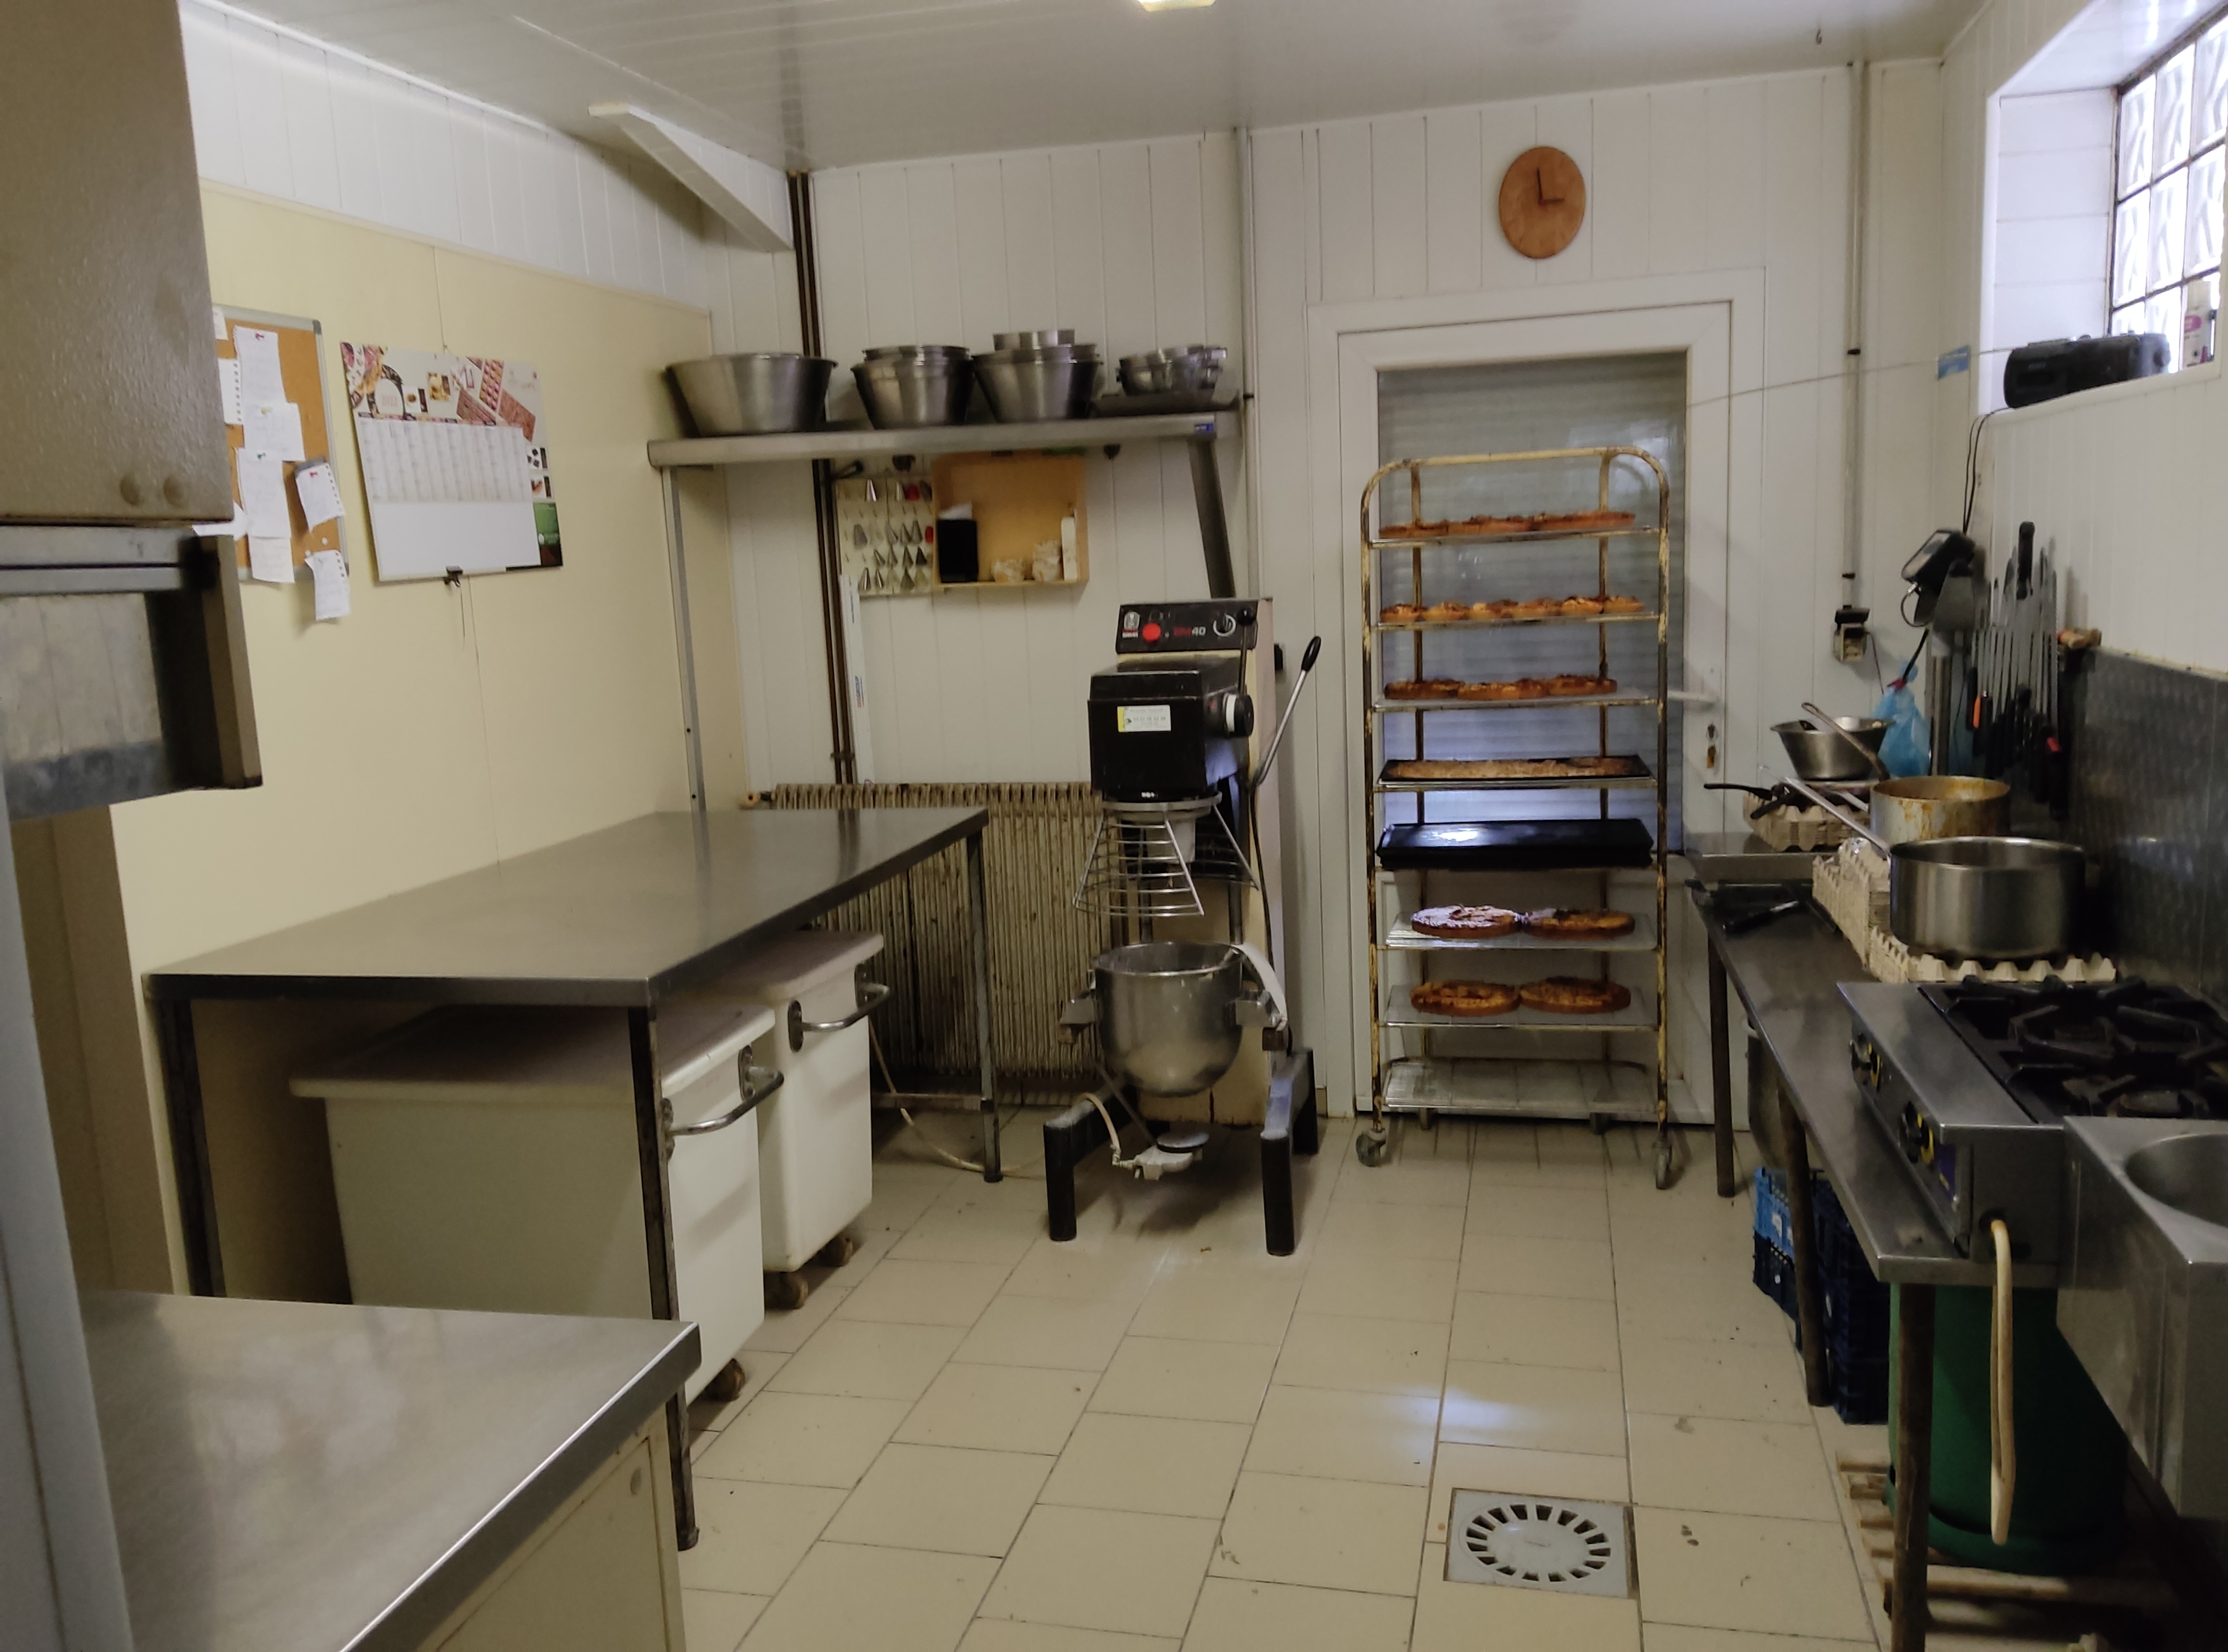 Vente boulangerie pâtisserie cause  retraite
Surface 300m2 Loc appartement 800€
1boulanger et 3 vendeuses